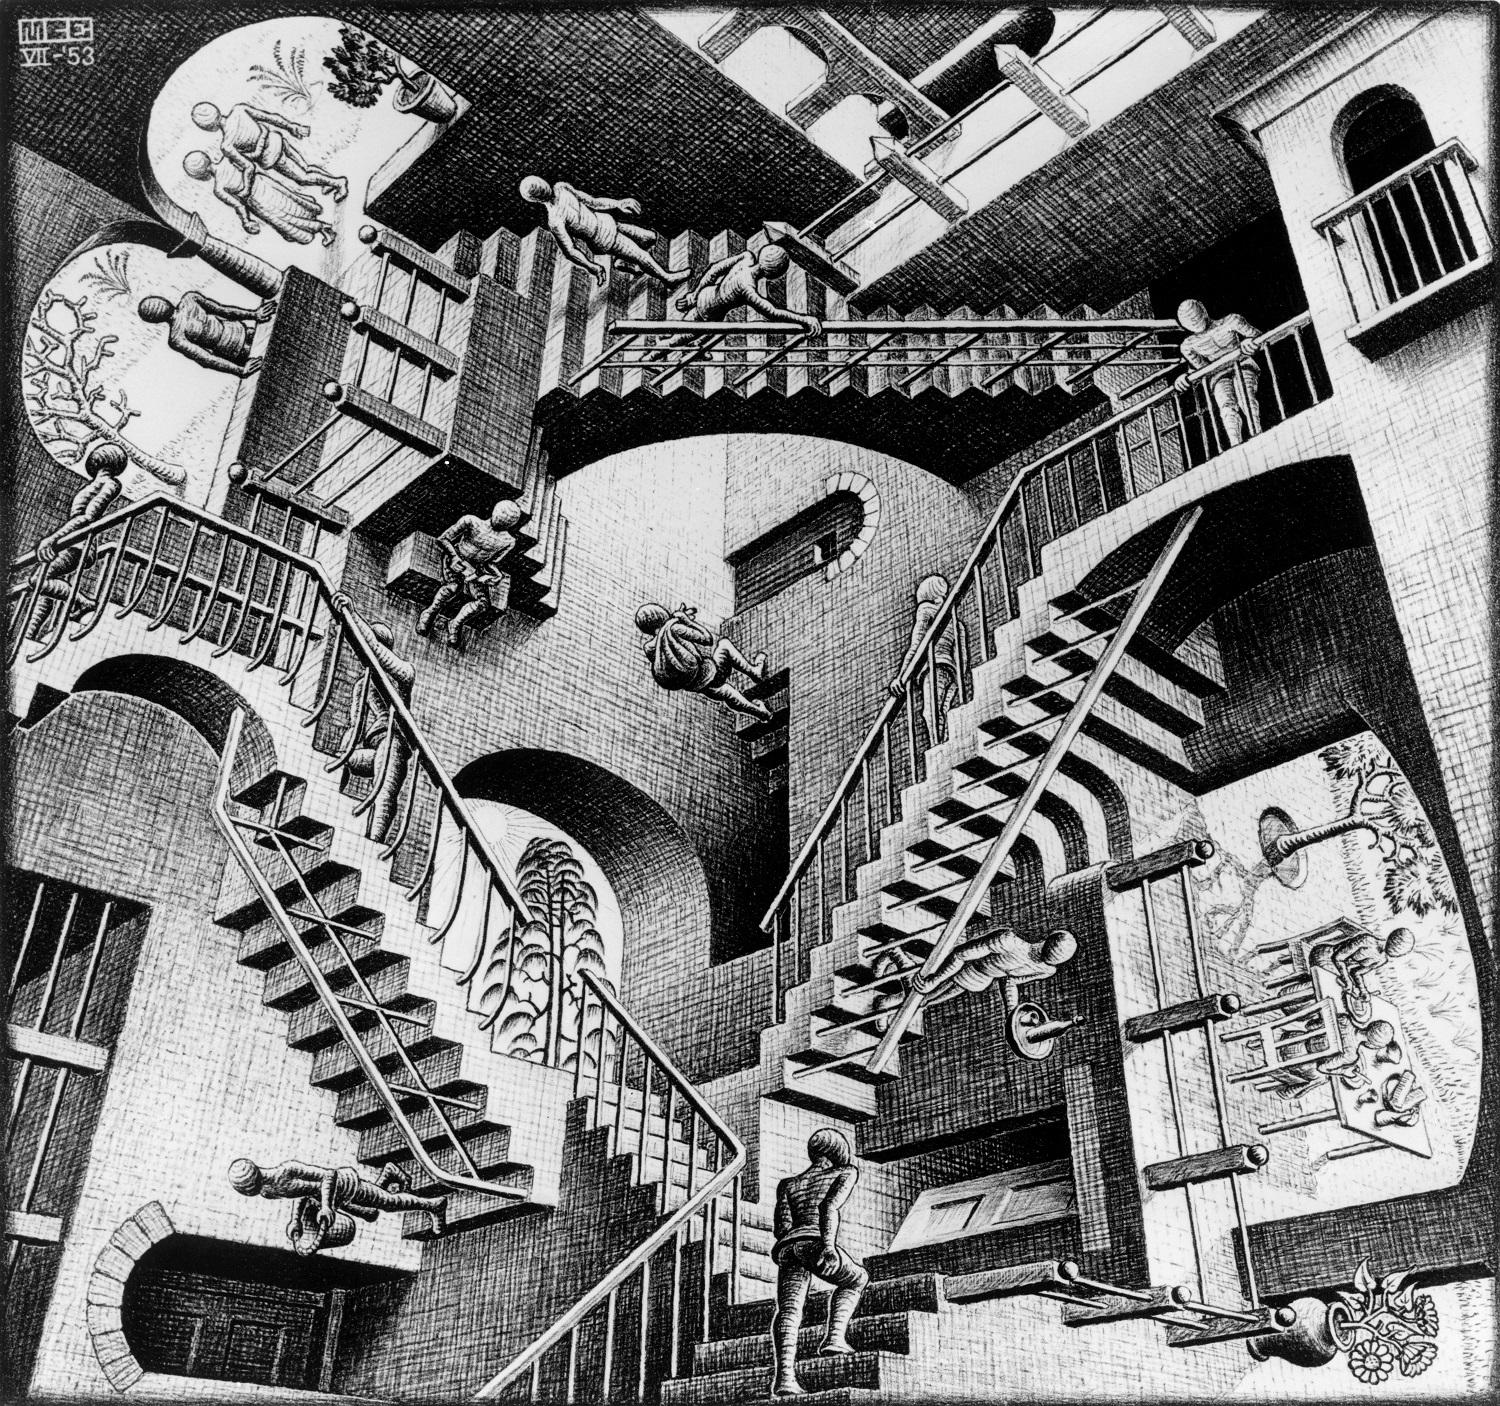 ​ 《相対性 1953》All M.C. Escher works  (c)the M.C. Escher Company B.V. - Baarn -the Netherlands. Used by permission.  All rights reserved. www.mcescher.com